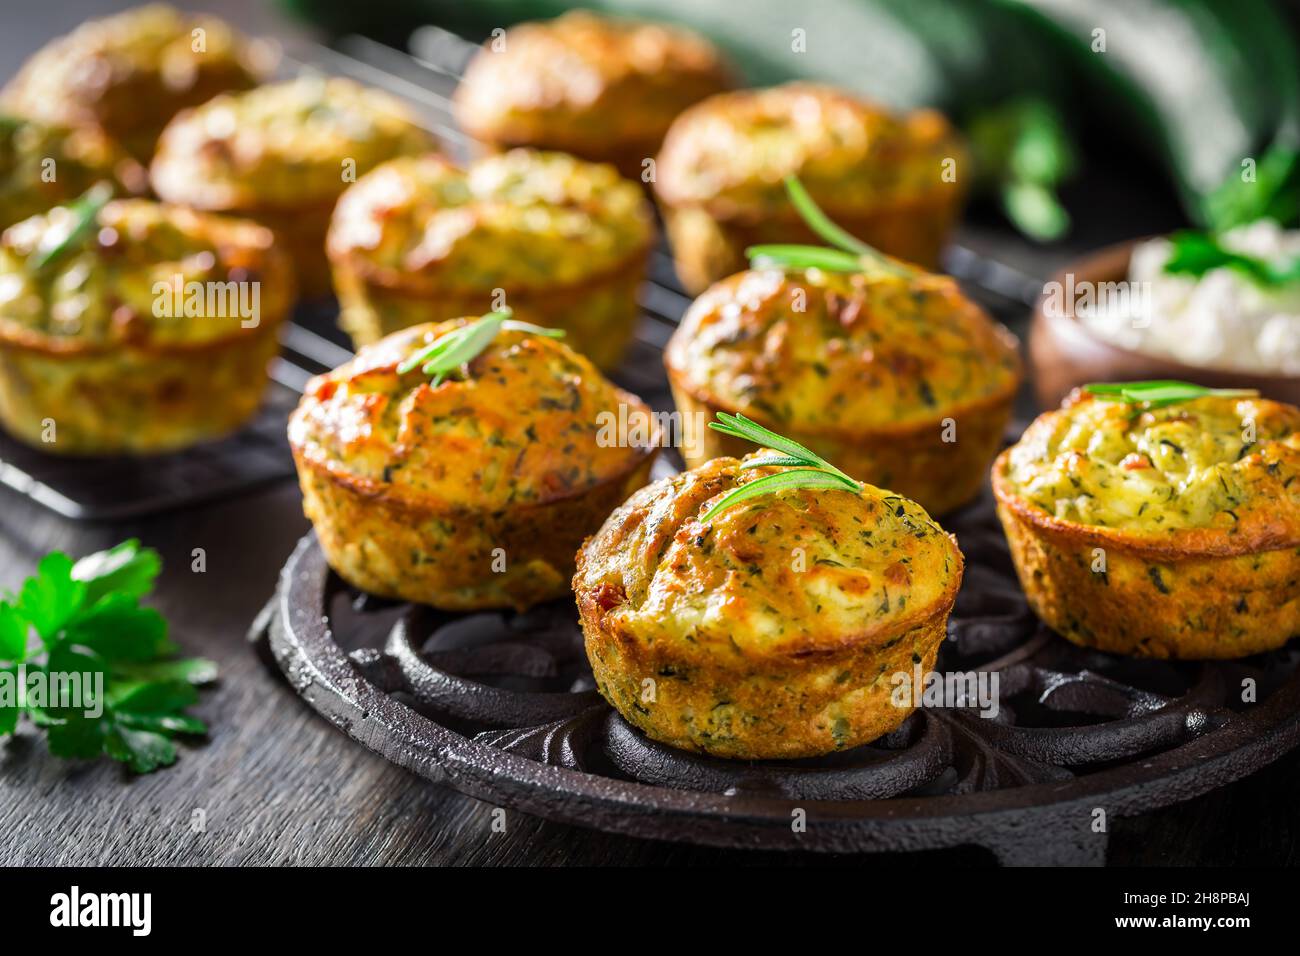 Muffins à la courgette maison au fromage feta, courgette savoureuse aux ingrédients Banque D'Images